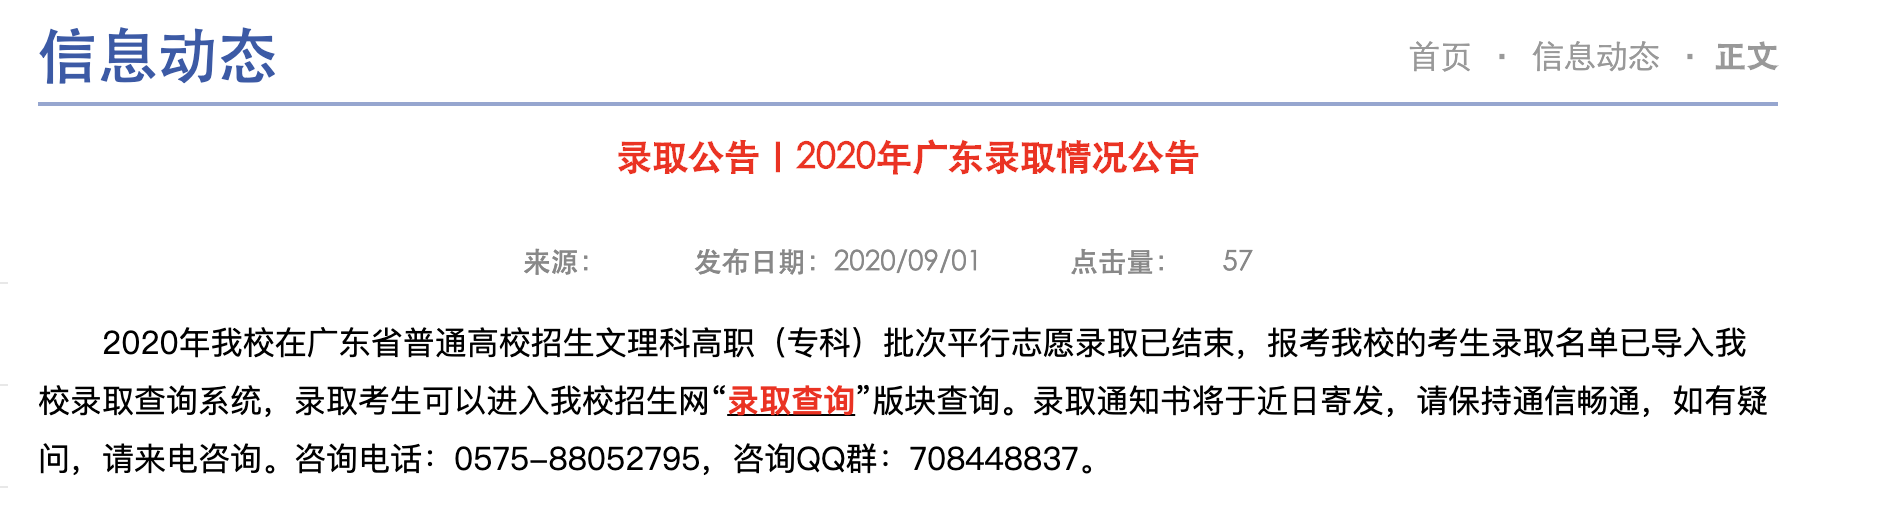 浙江邮电职业技术学院2020年广东录取情况公告